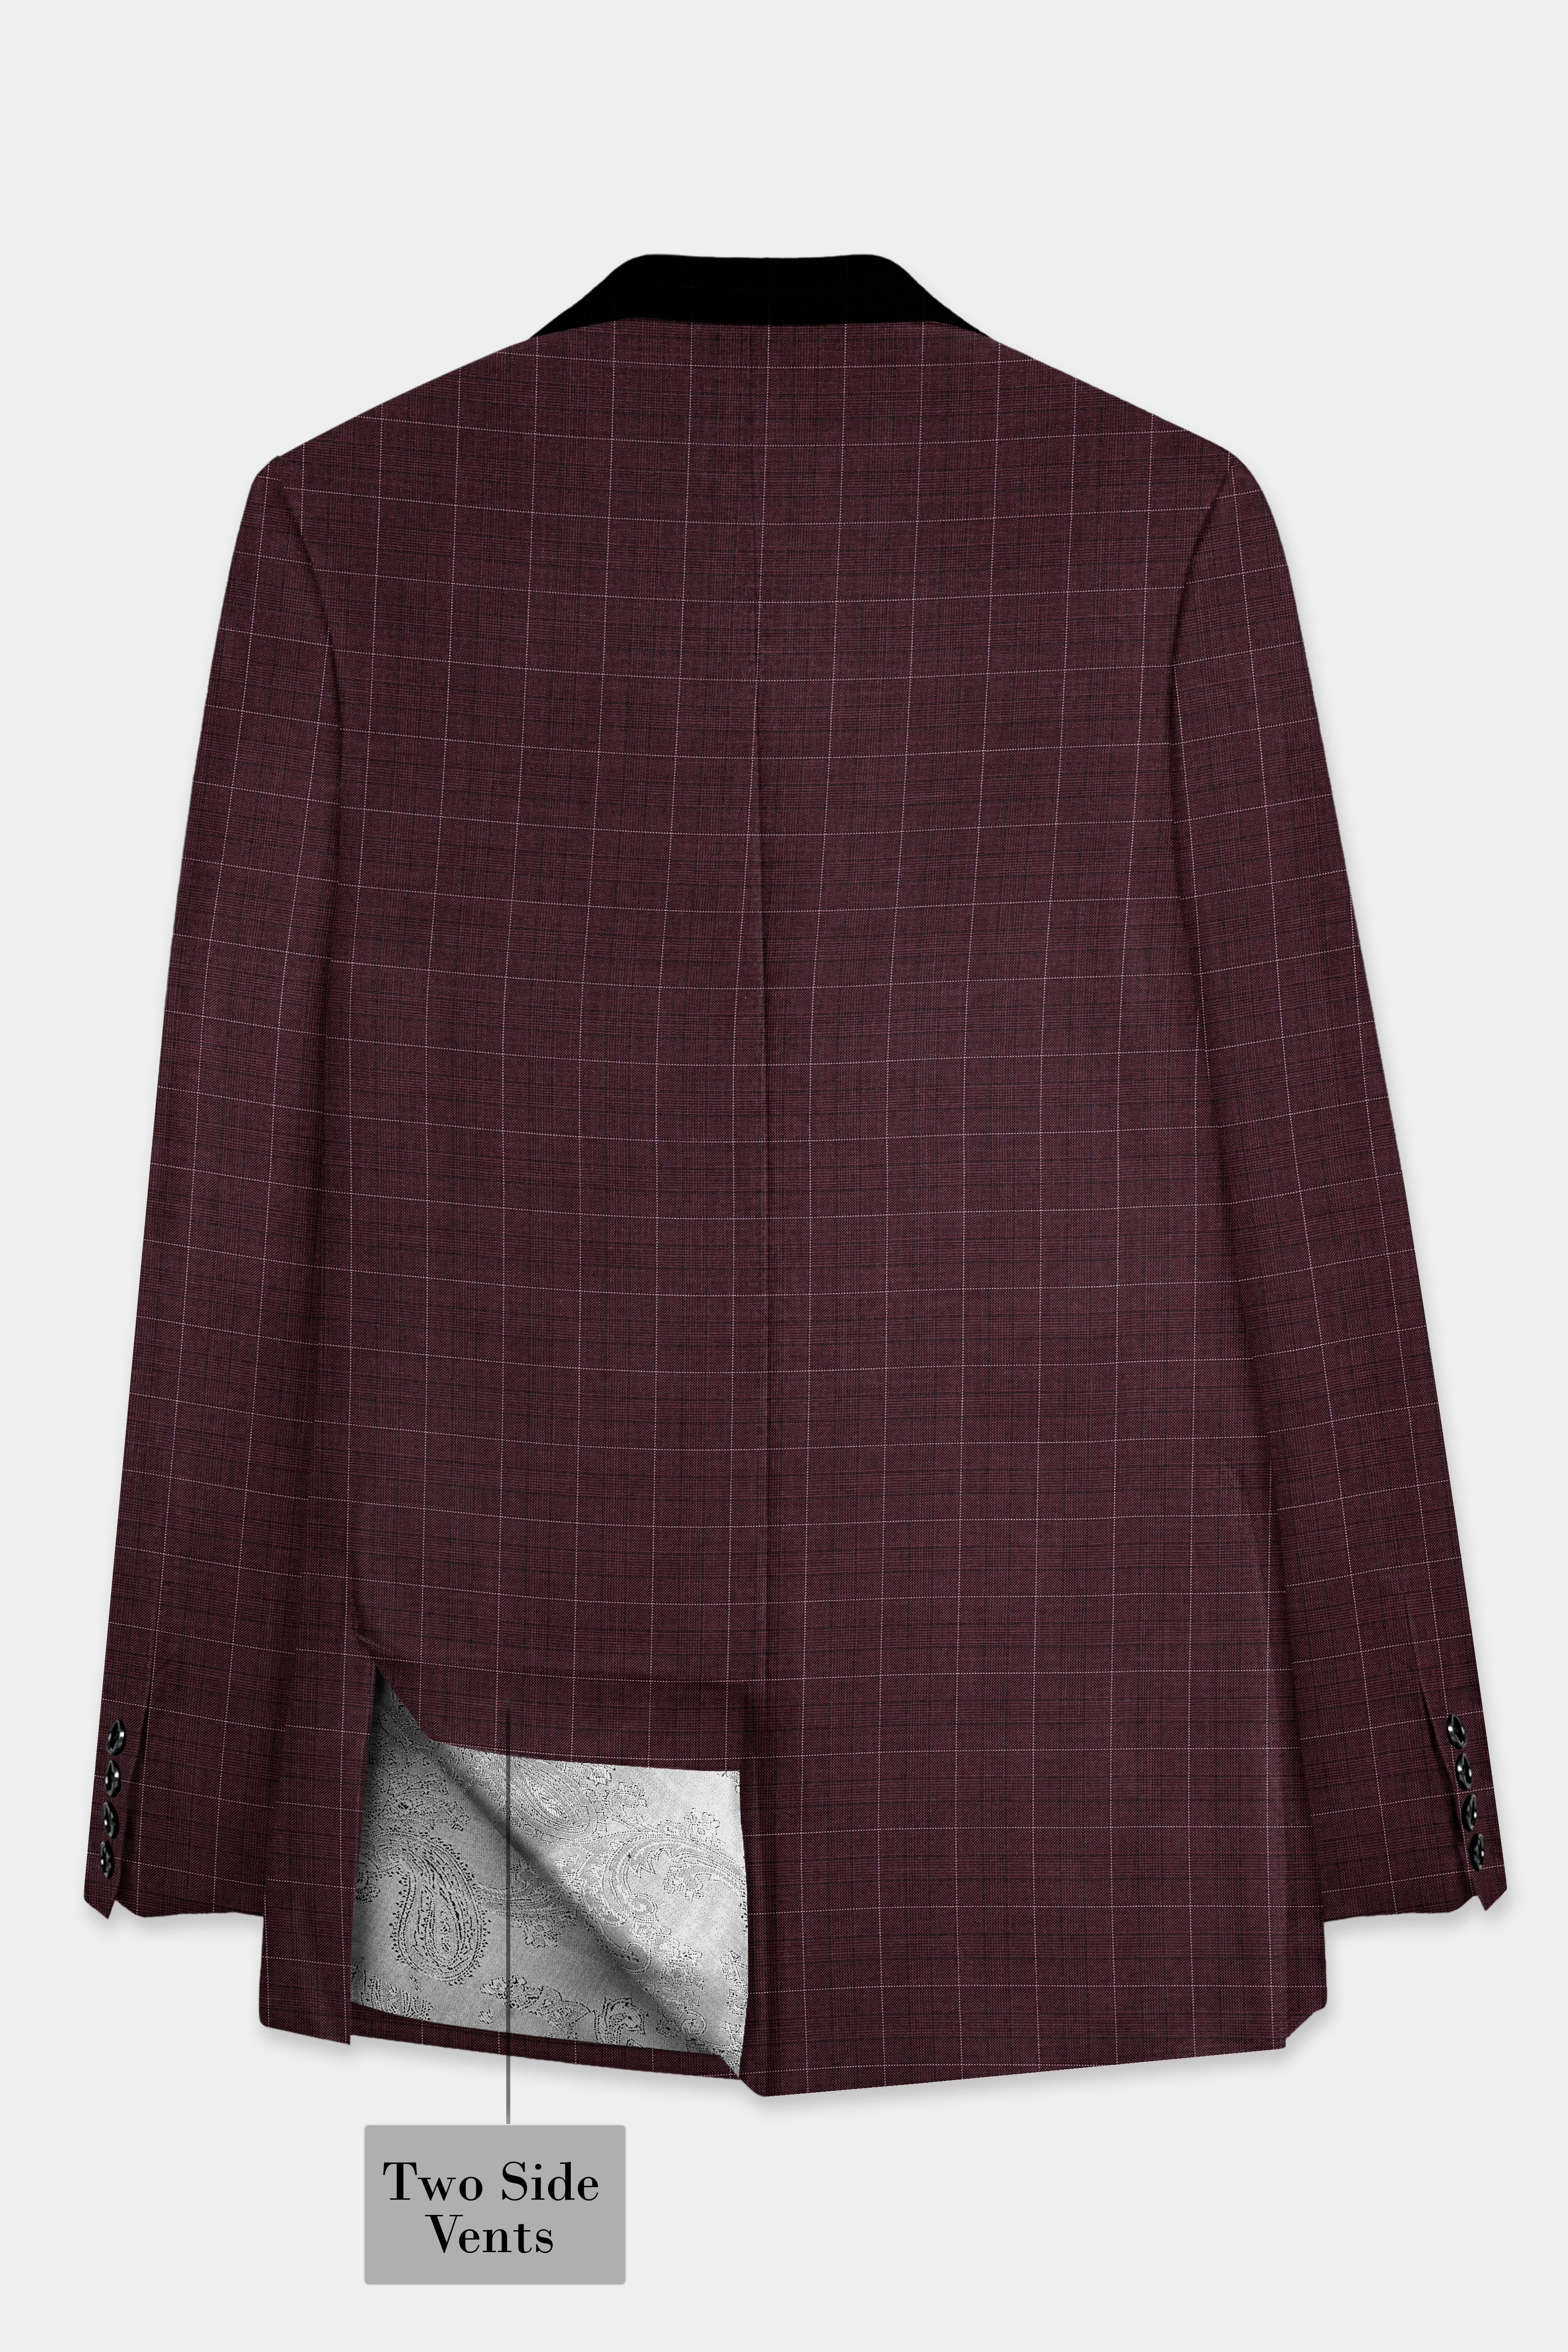 Iroko maroon Windowpane Wool Rich Tuxedo Suit